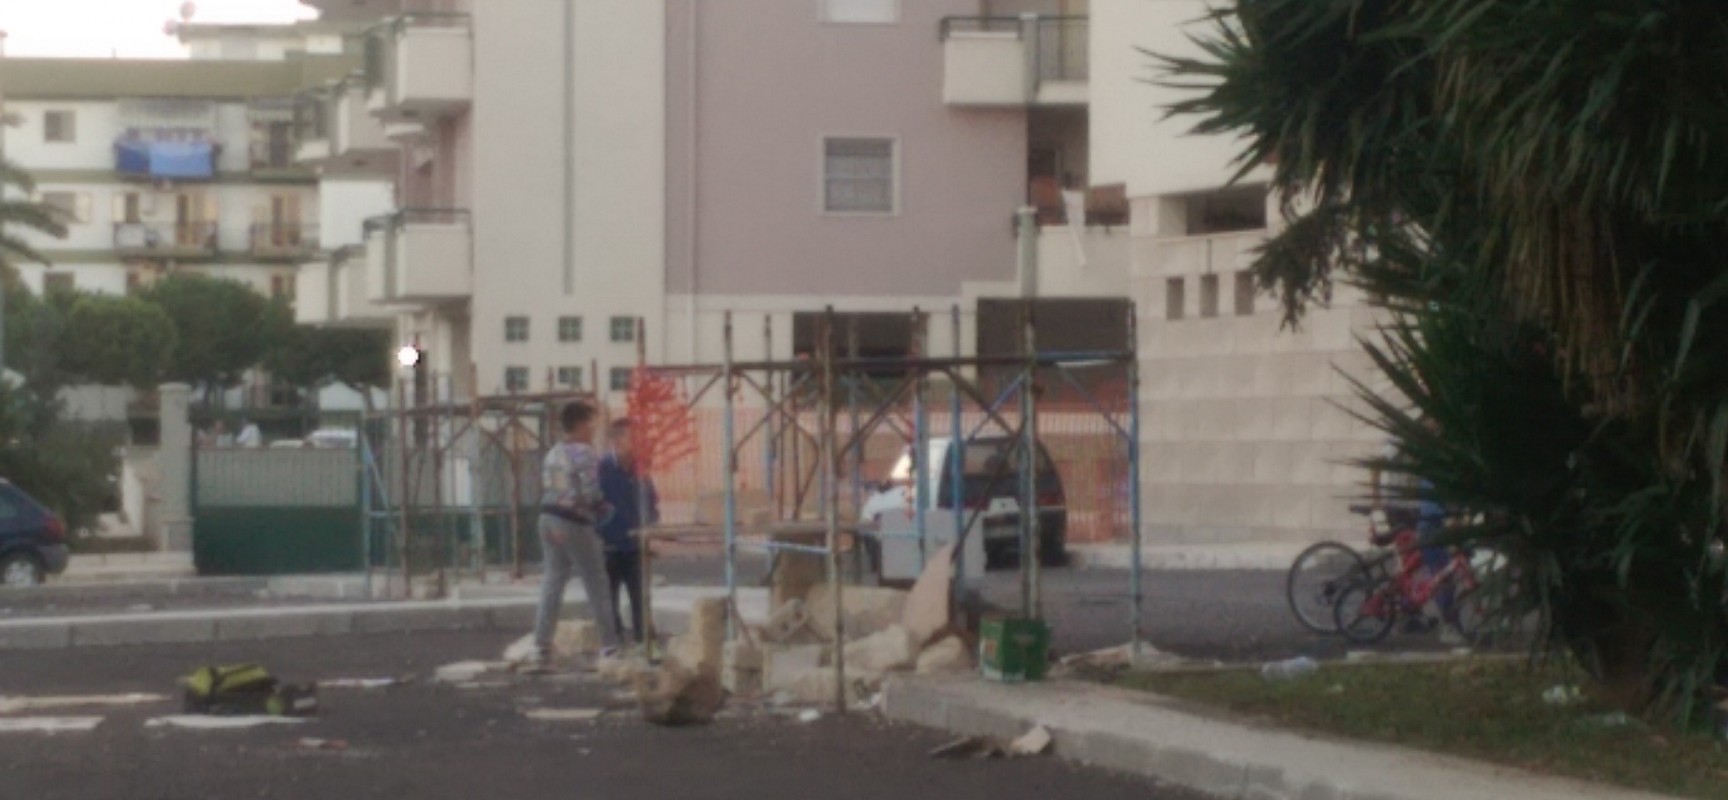 Giochi pericolosi nel quartiere San Pietro, bambini alle prese con impalcatura e blocchi di pietra